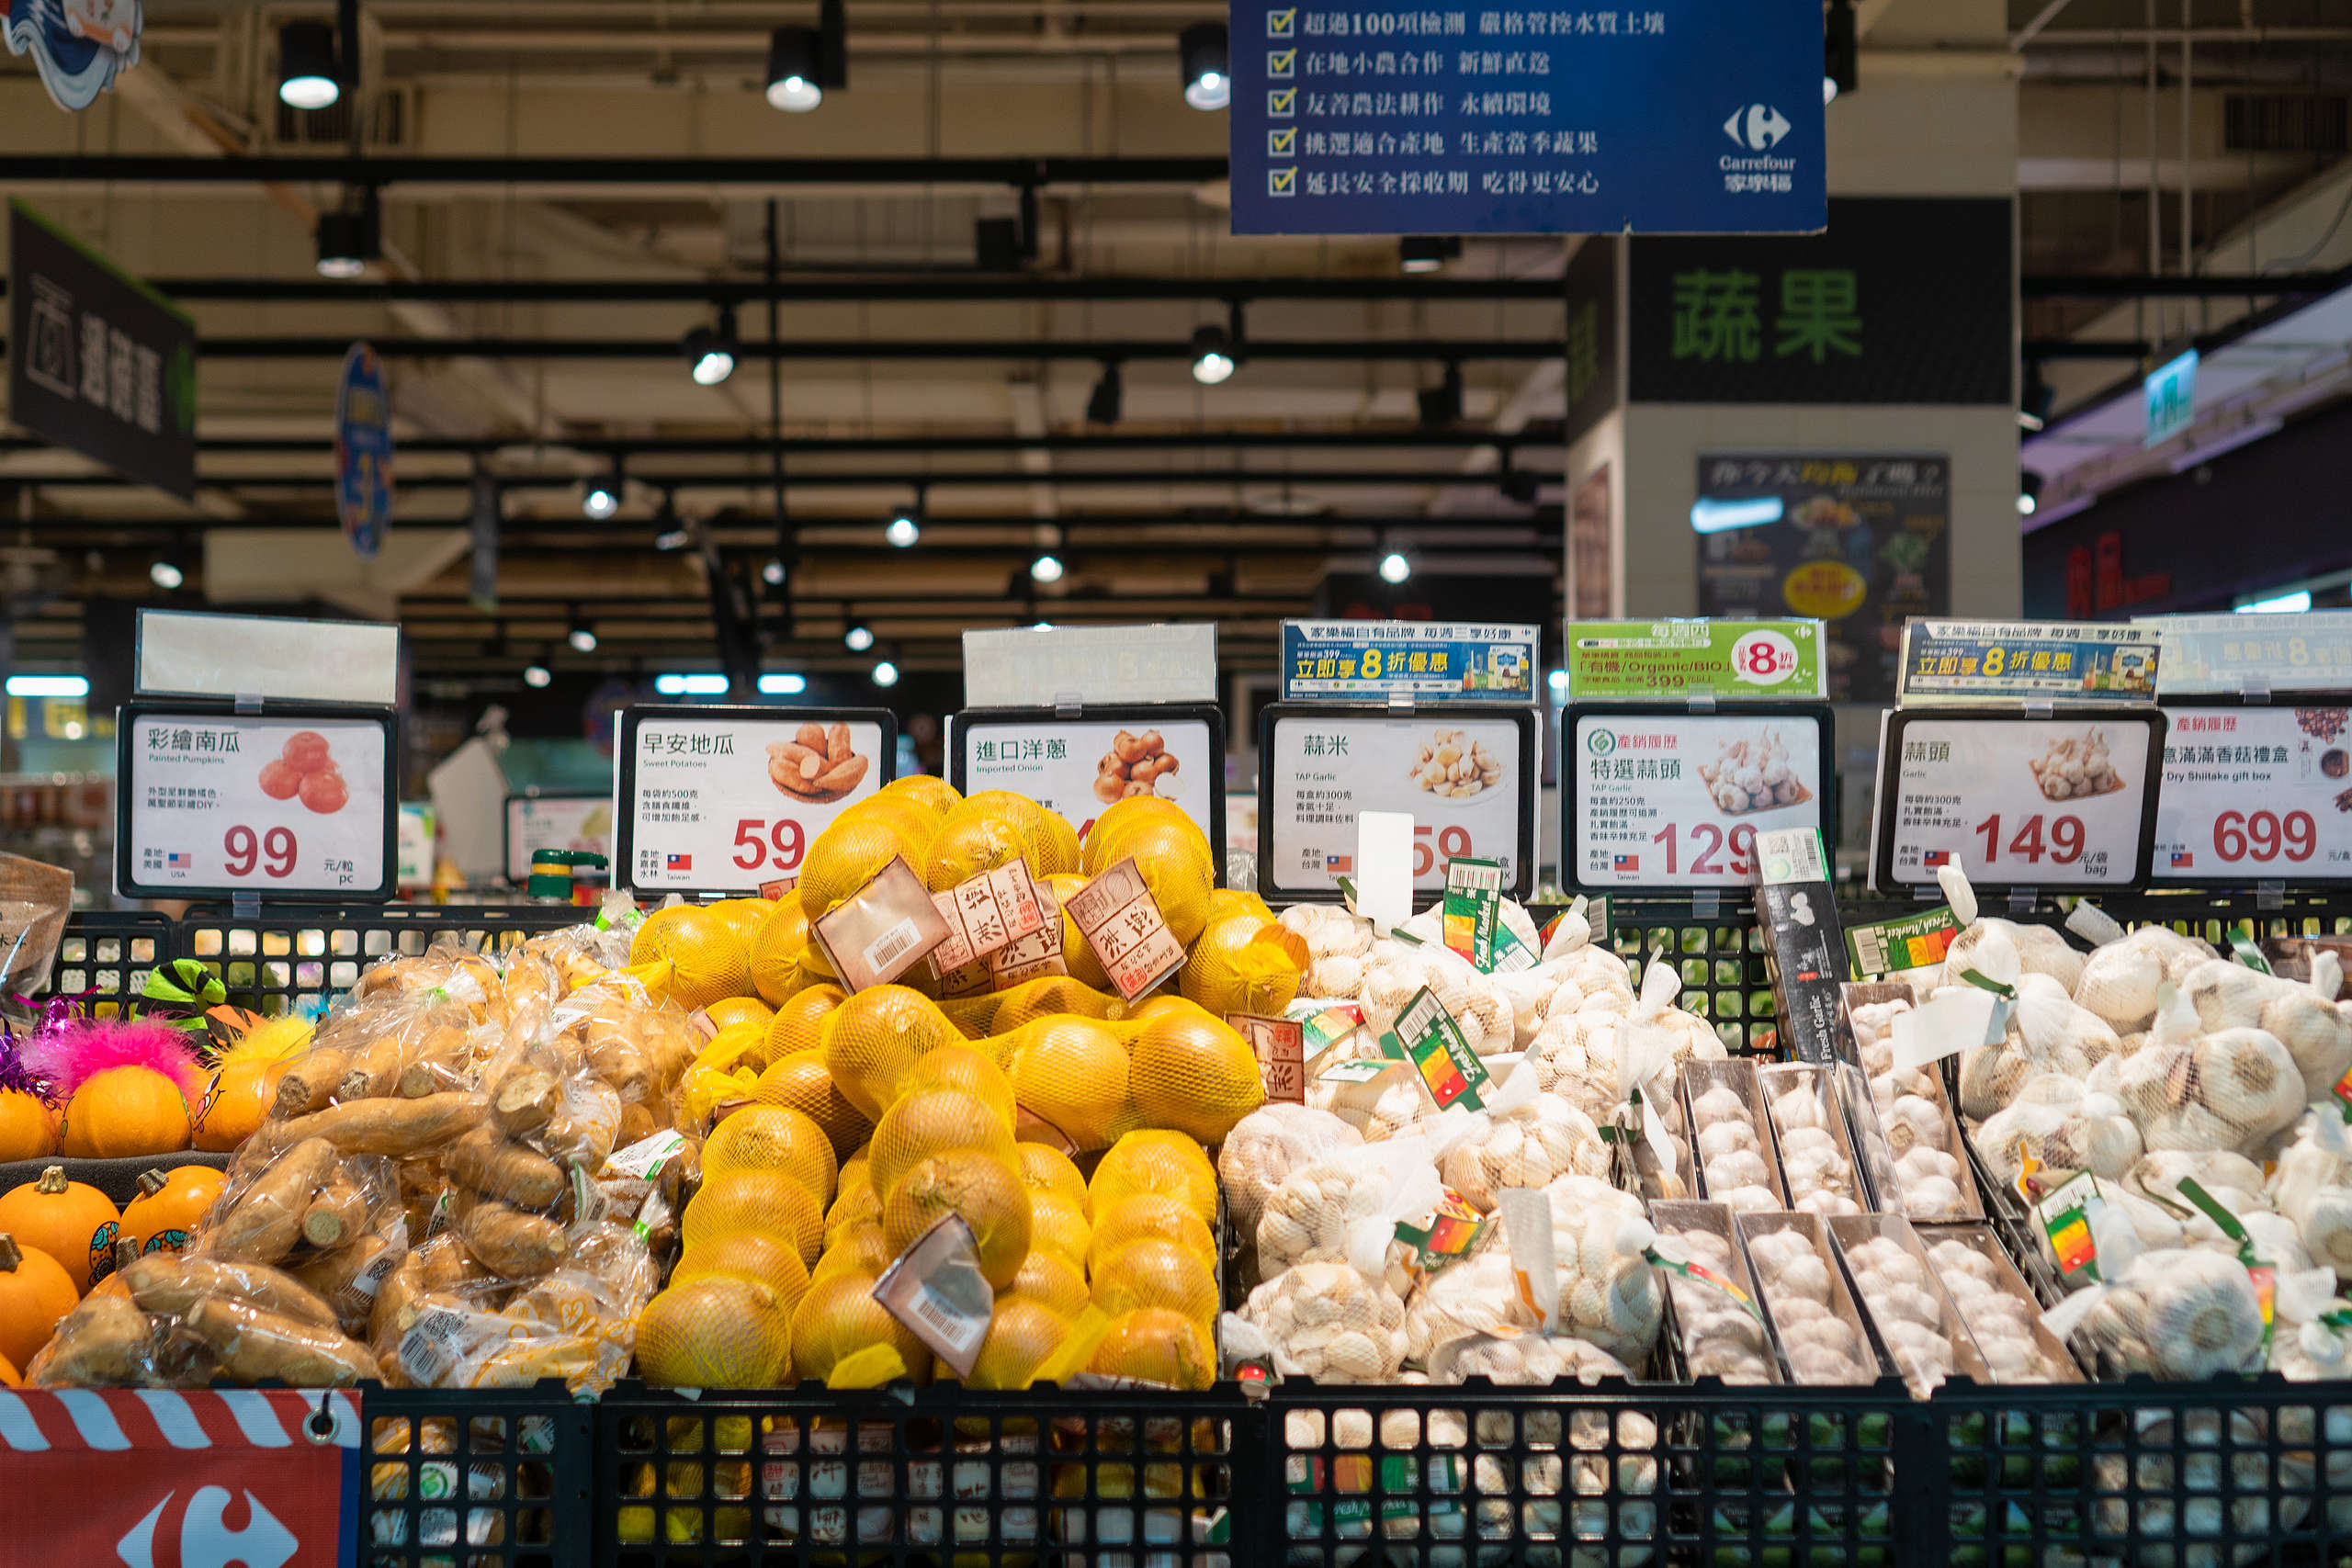 目前臺灣主要零售通路所販賣的產品多以塑膠包裝為主，且並未承擔後續回收處理的責任，每年產出上萬公噸的塑膠廢棄物，由全民買單。